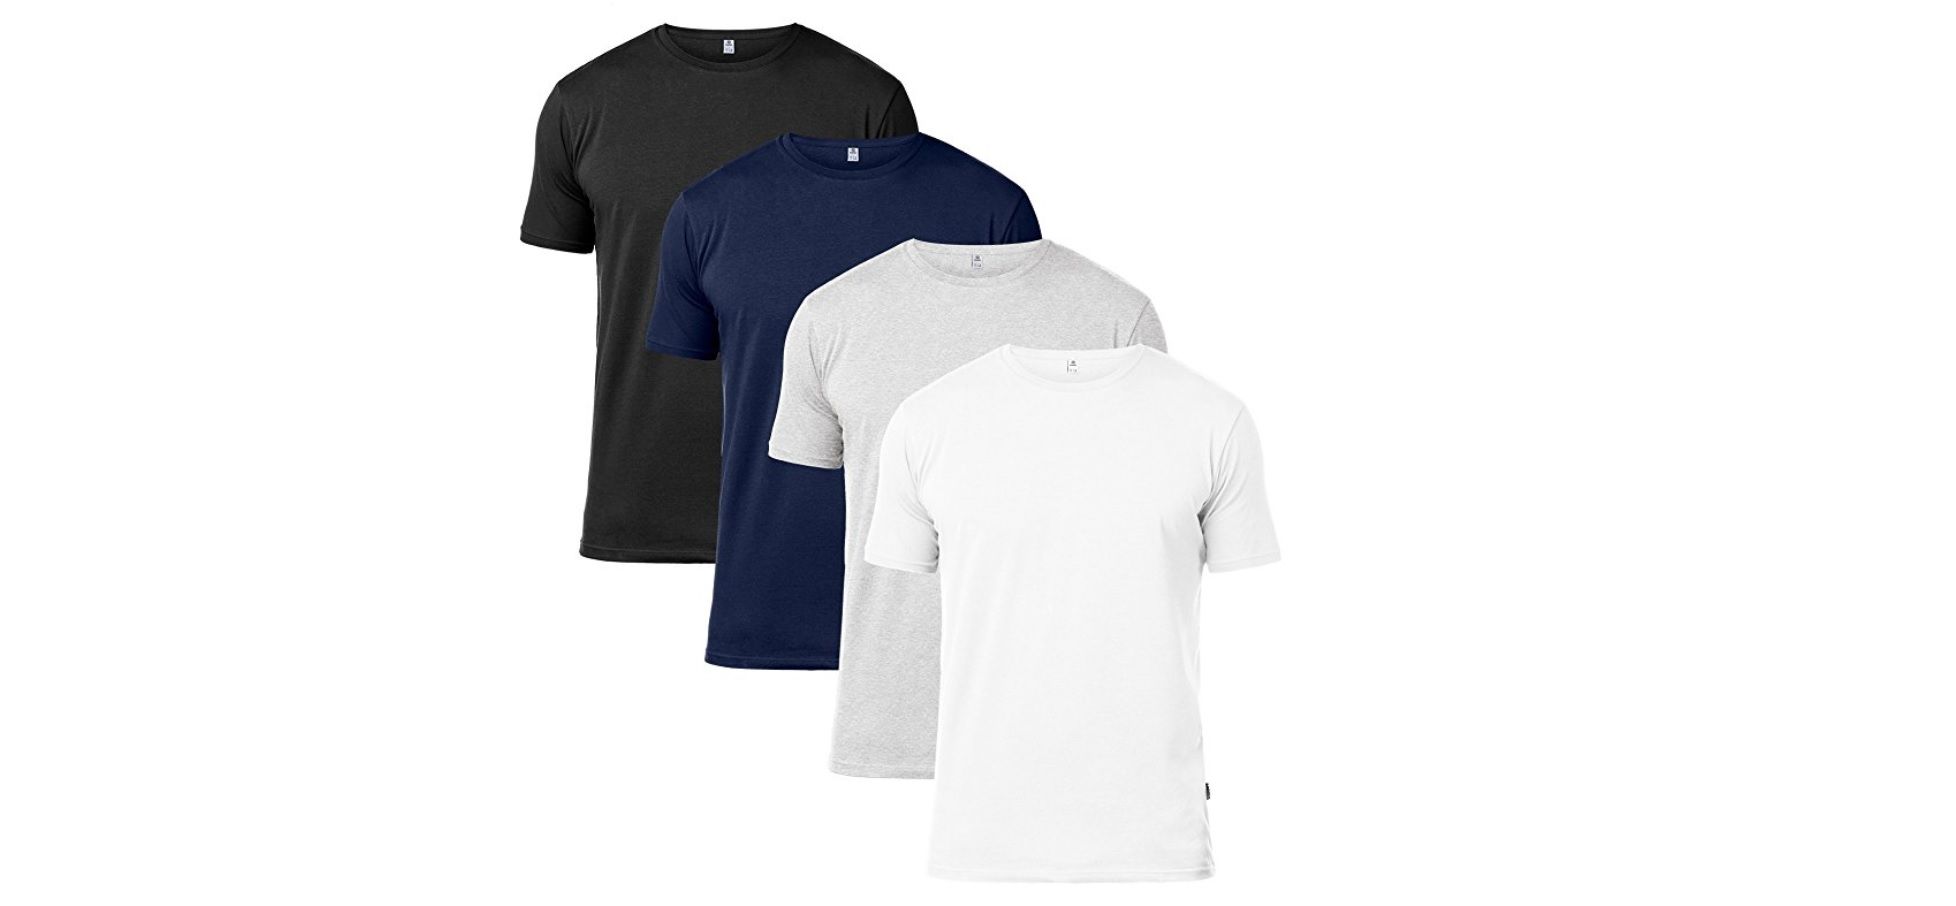 ¡Chollo! Pack de 4 camisetas LAPASA por sólo 21,08€ (5,27€ unidad) ¡En diferentes colores!